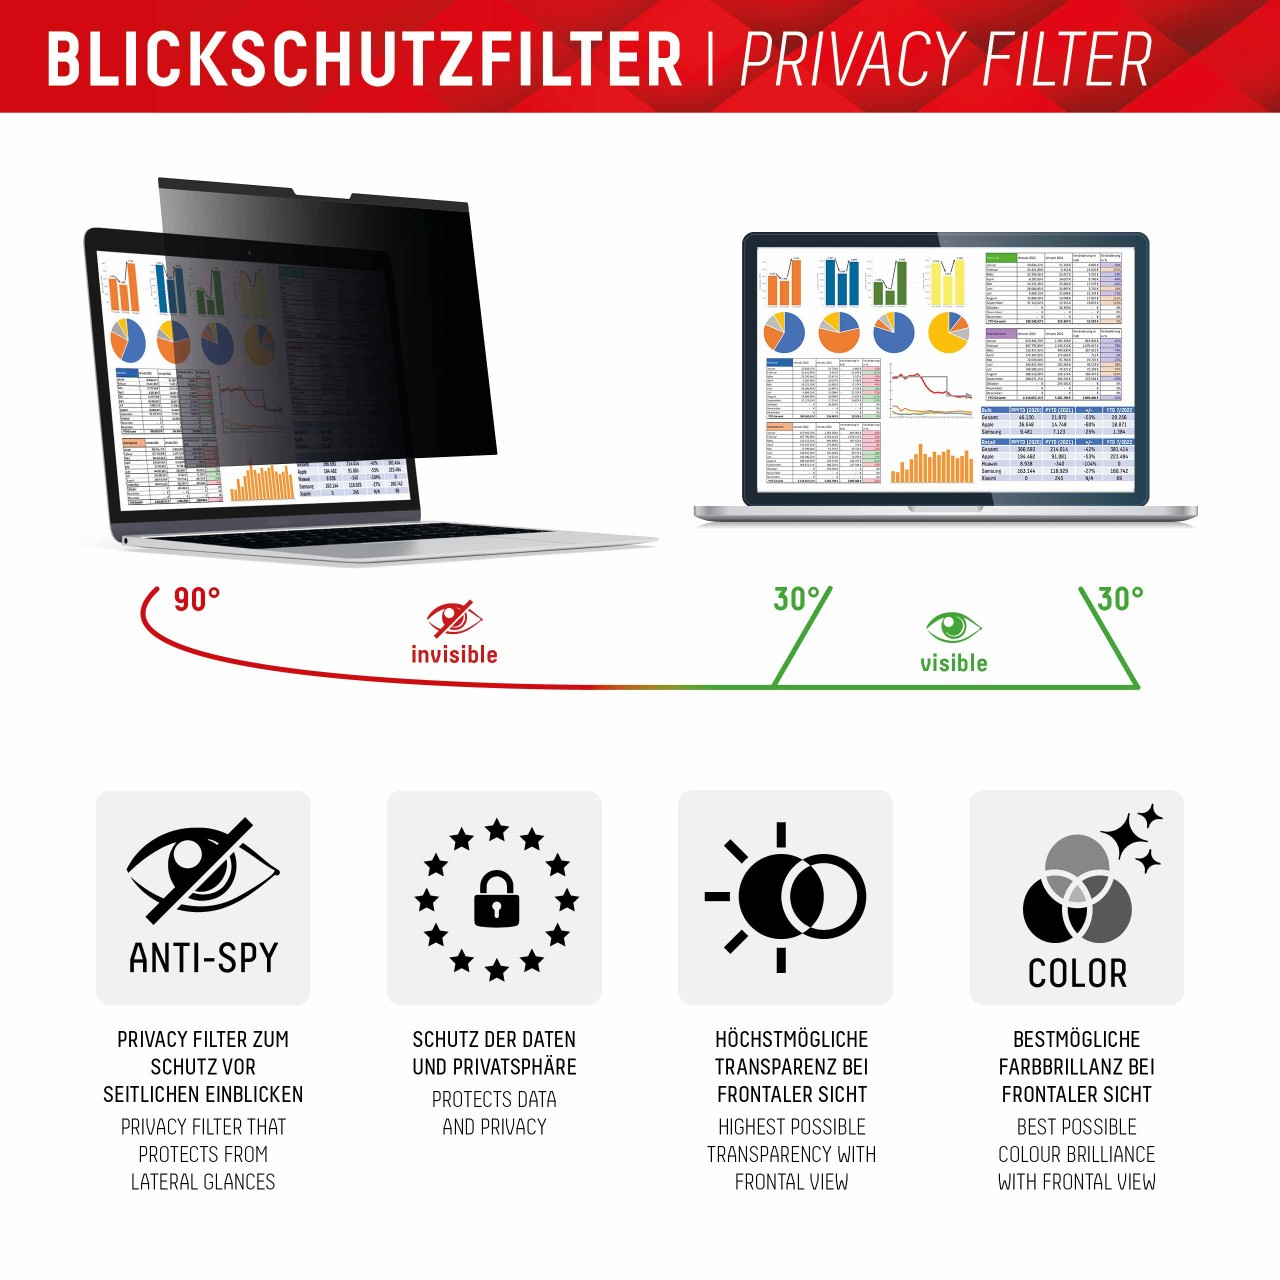 PRIVACY SAFE Magnetischer 2-Wege Blickschutzfilter für Laptop/ Notebook 15,6'' (16:9)